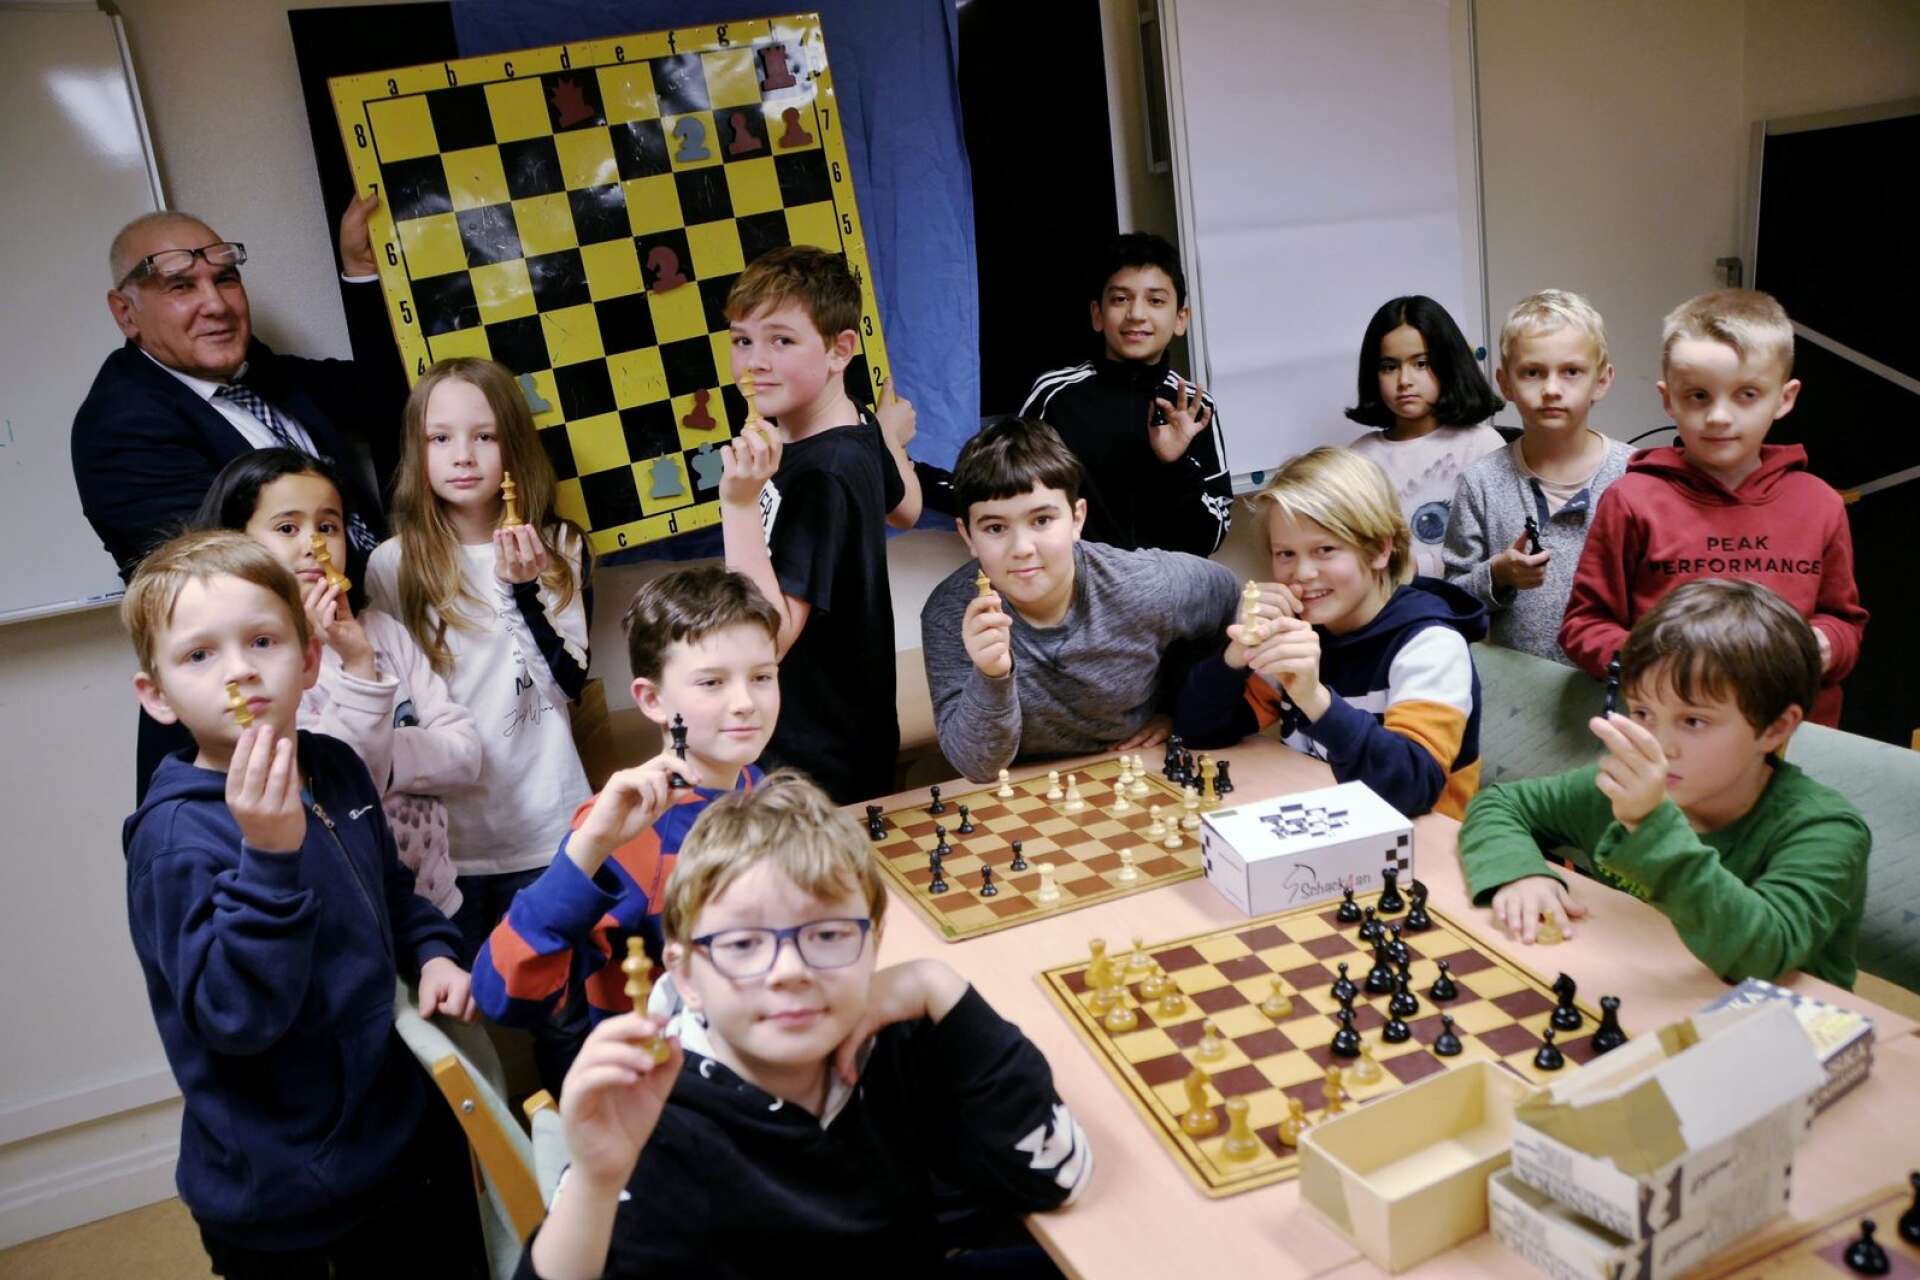 Kulturskolan i Bengtsfors utvidgar under senhösten sitt utbud med några nya kurser. En av dessa är schack, under ledning av Safian Haj Mohamed, själv aktiv schackspelare sedan 40 år tillbaka. Det är en populär satsning som 15 barn har anmält sig till.